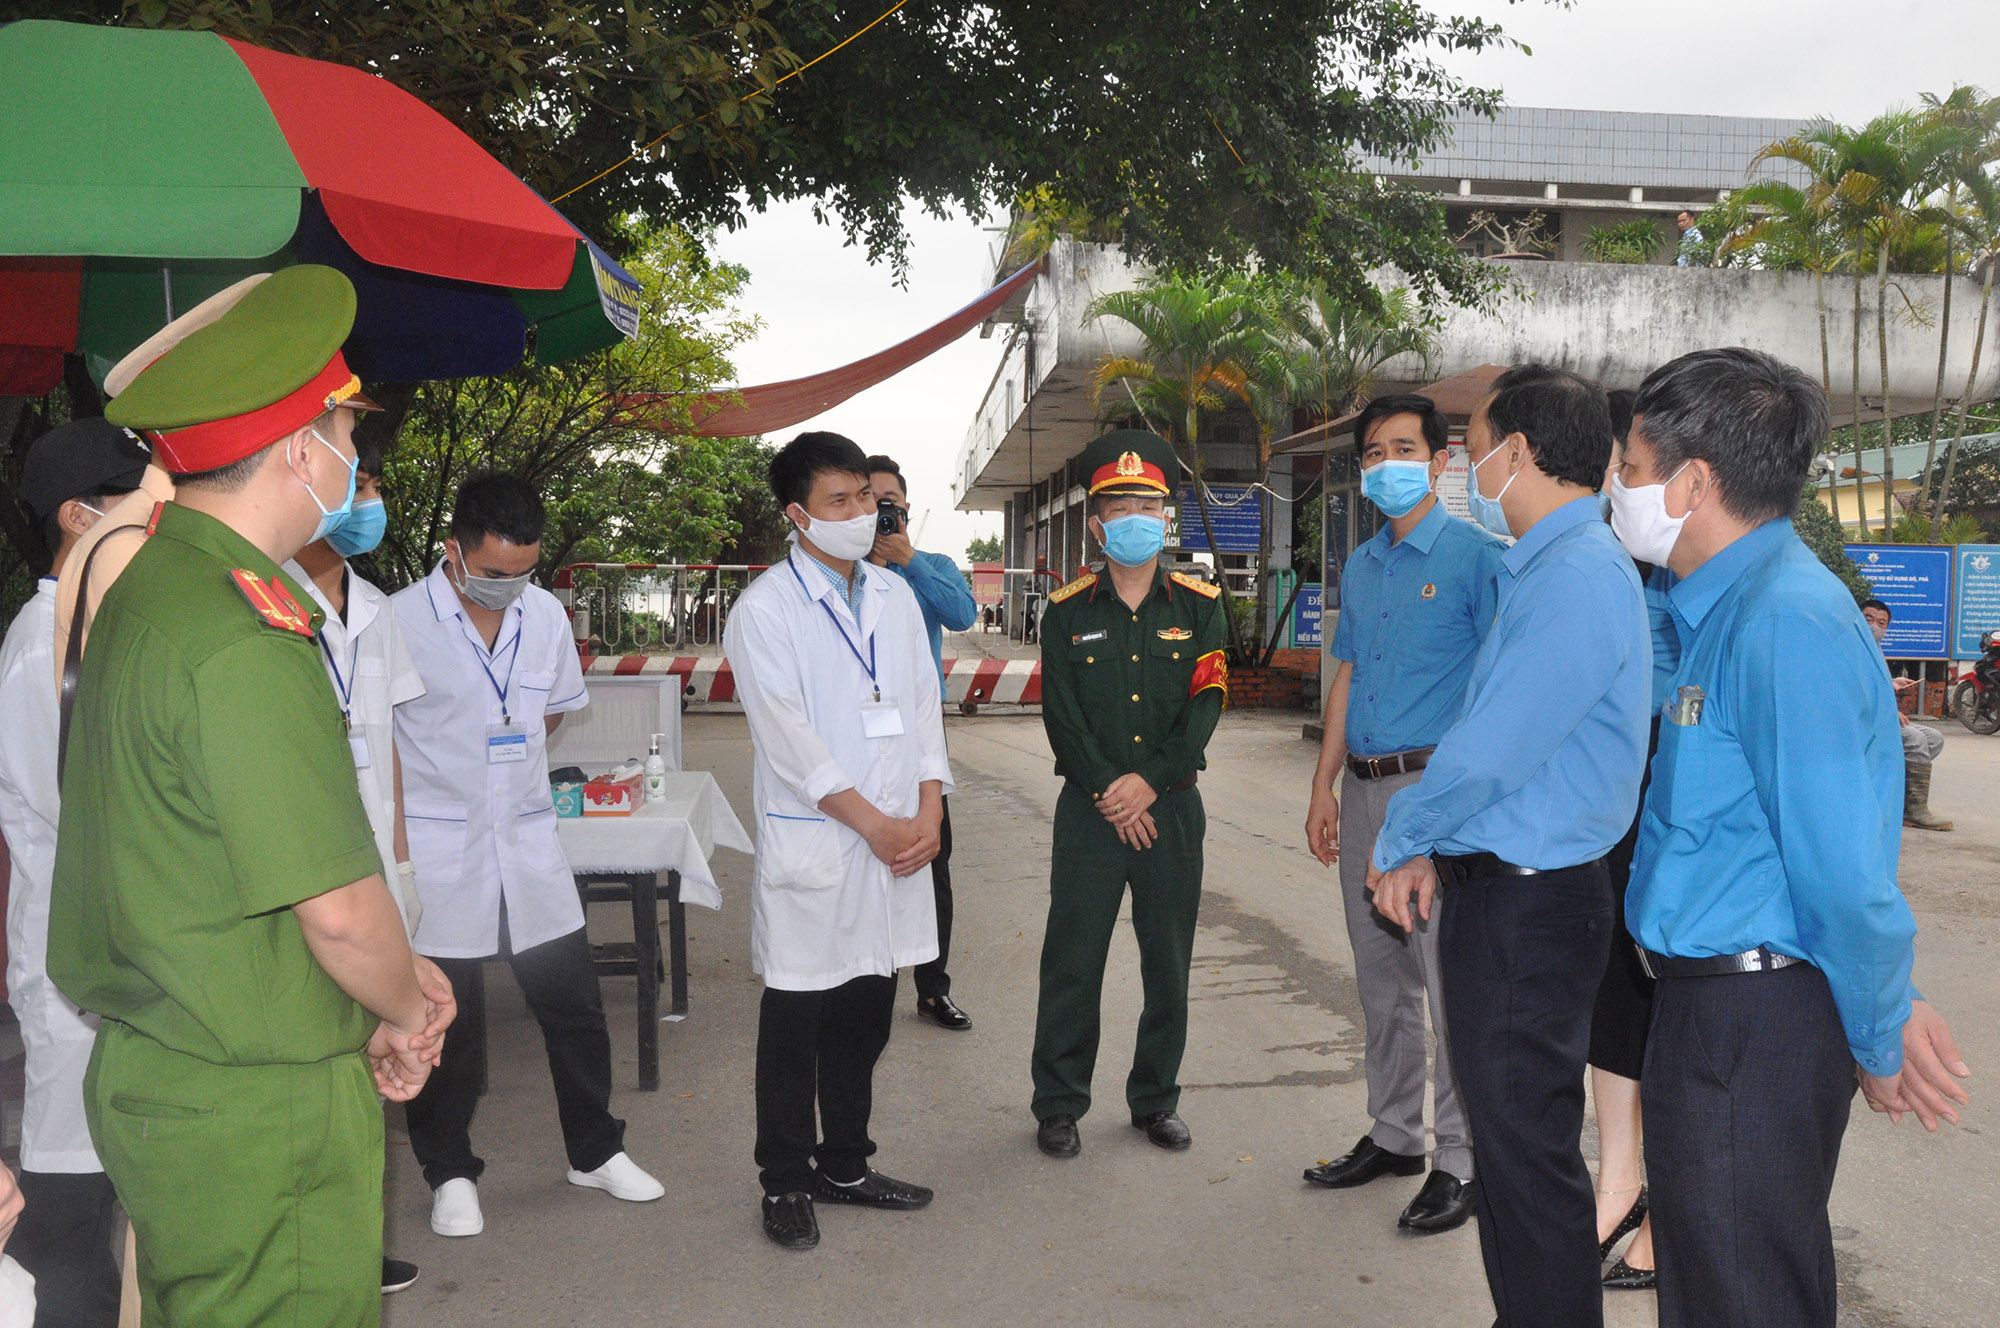 Đoàn công tác của LĐLĐ tỉnh cũng kịp thời thăm, động viên các cán bộ, nhân viên, chiến sĩ, y bác sĩ làm việc tại